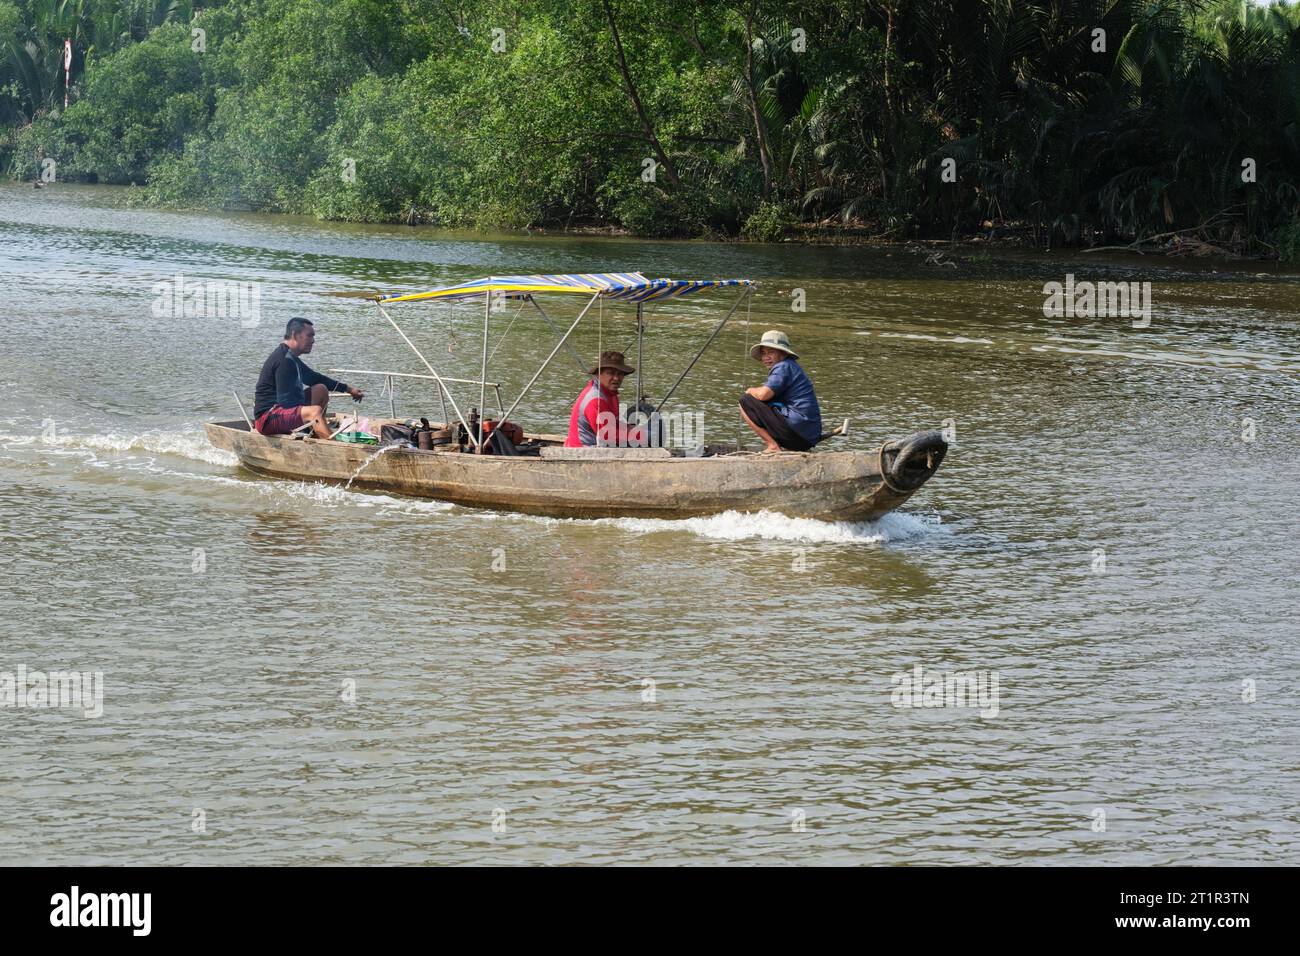 Small Boat on Saigon River, near Ho Chi Minh, Vietnam. Stock Photo